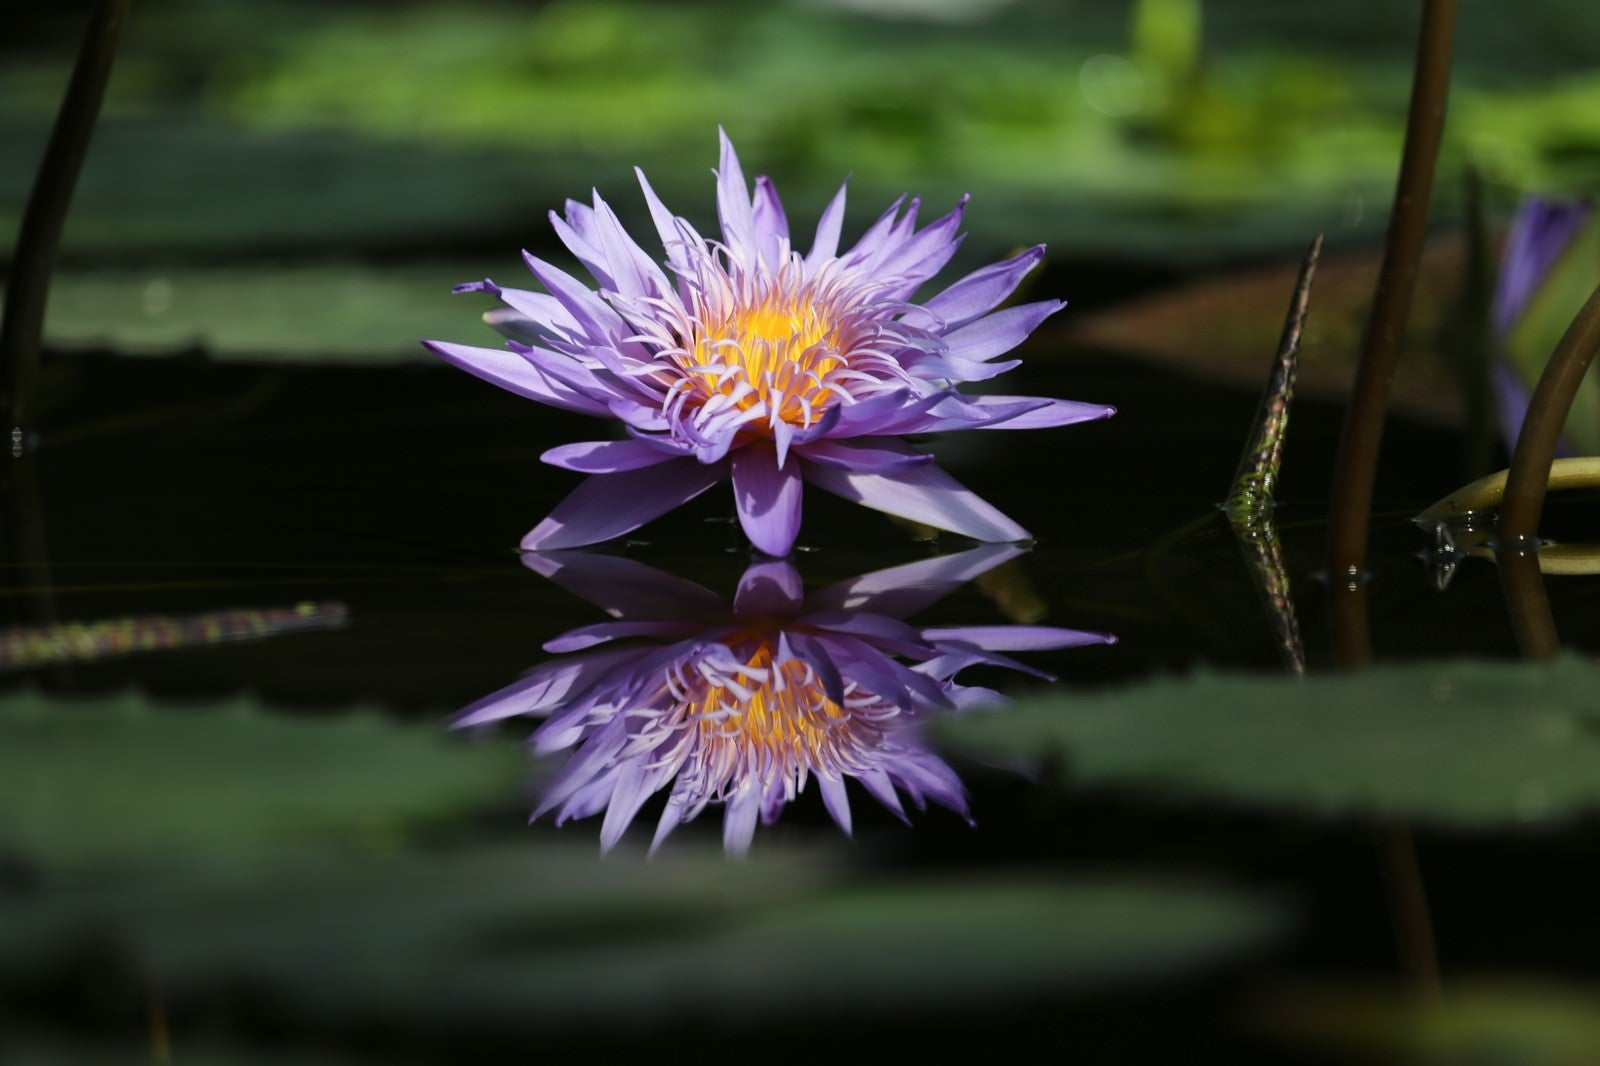 「水面に浮かぶ睡蓮の葉とリフレクションする花」の写真